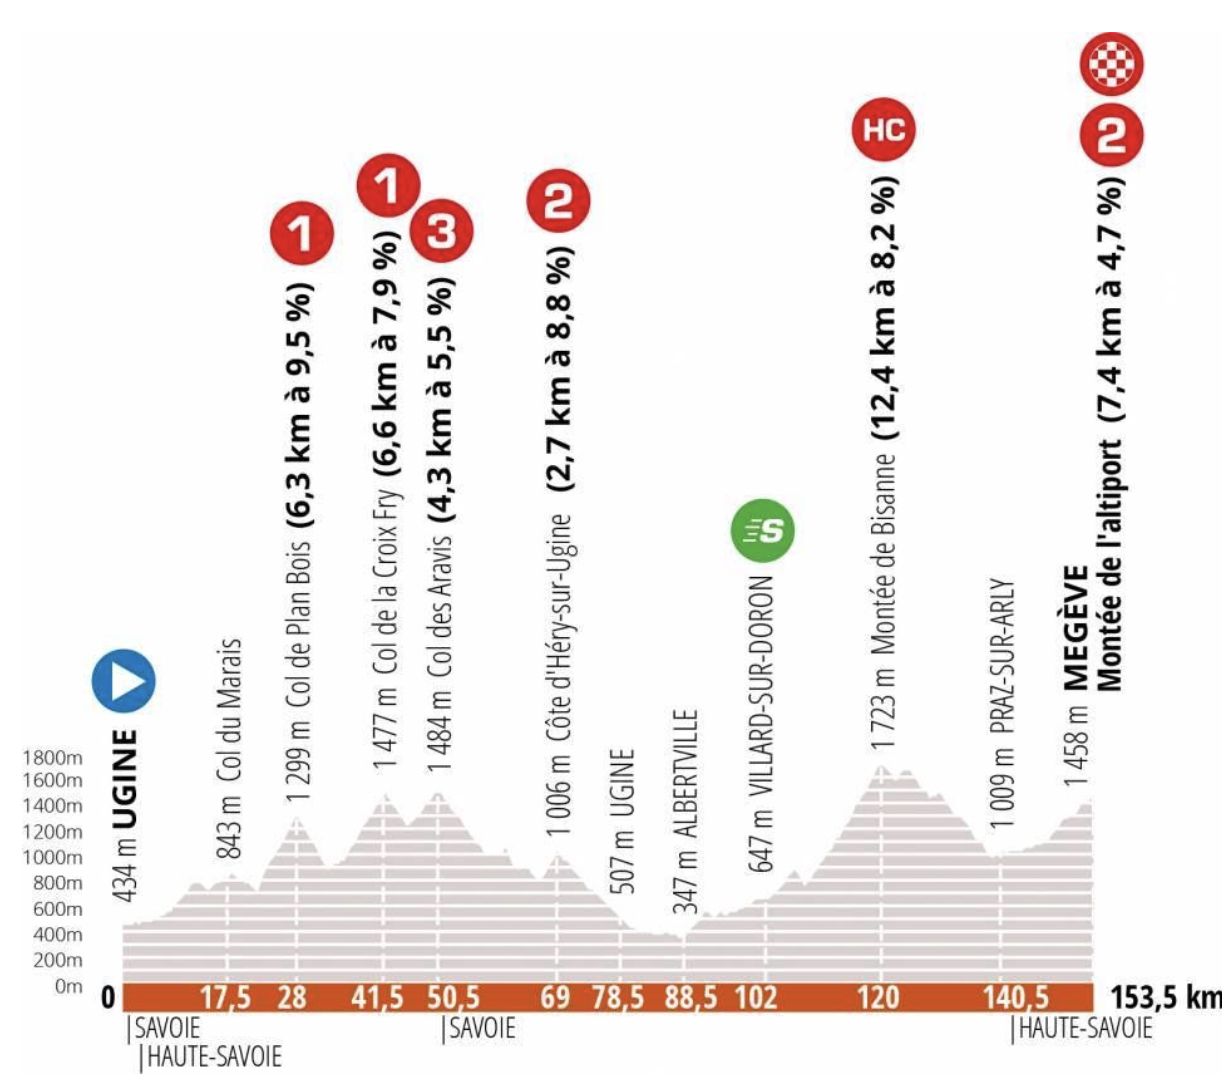 Critérium du Dauphiné stage 4 Live coverage Cyclingnews